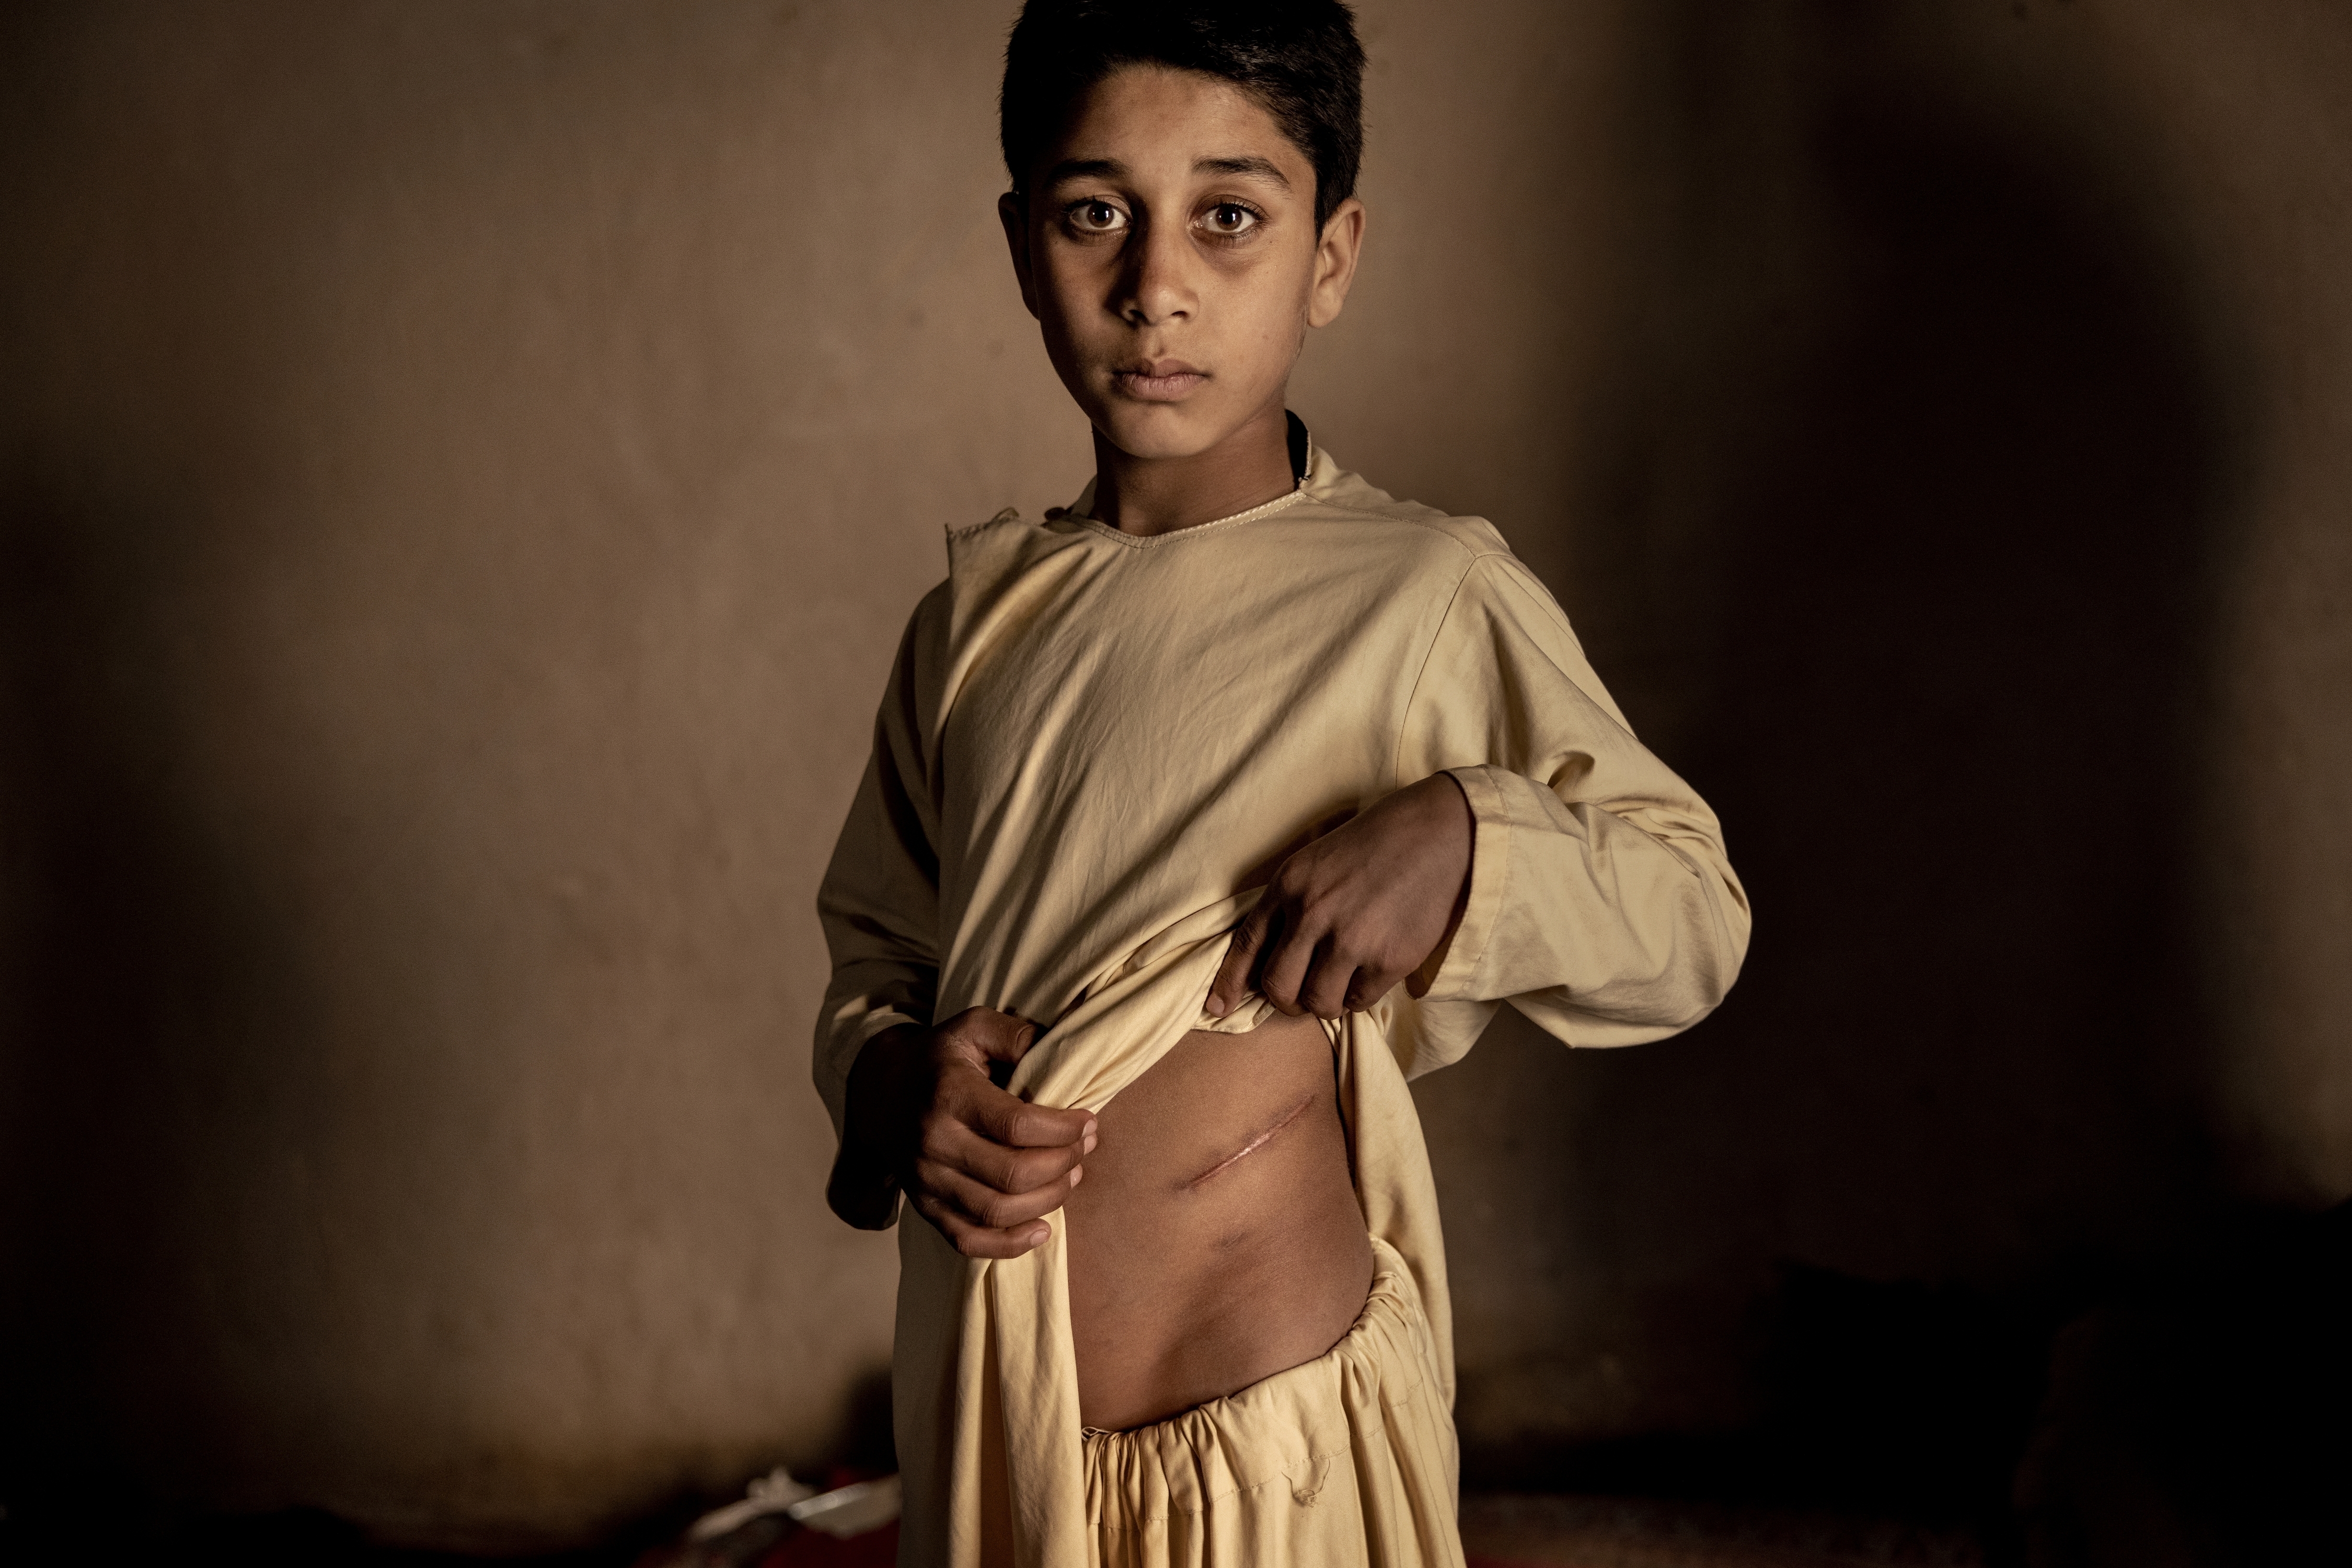 Foto de la serie titulada "El precio de la paz en Afganistán", que ganó la categoría Mejor Reportaje Fotográfico, del fotógrafo Mads Nissen (Politiken/Panos Pictures)